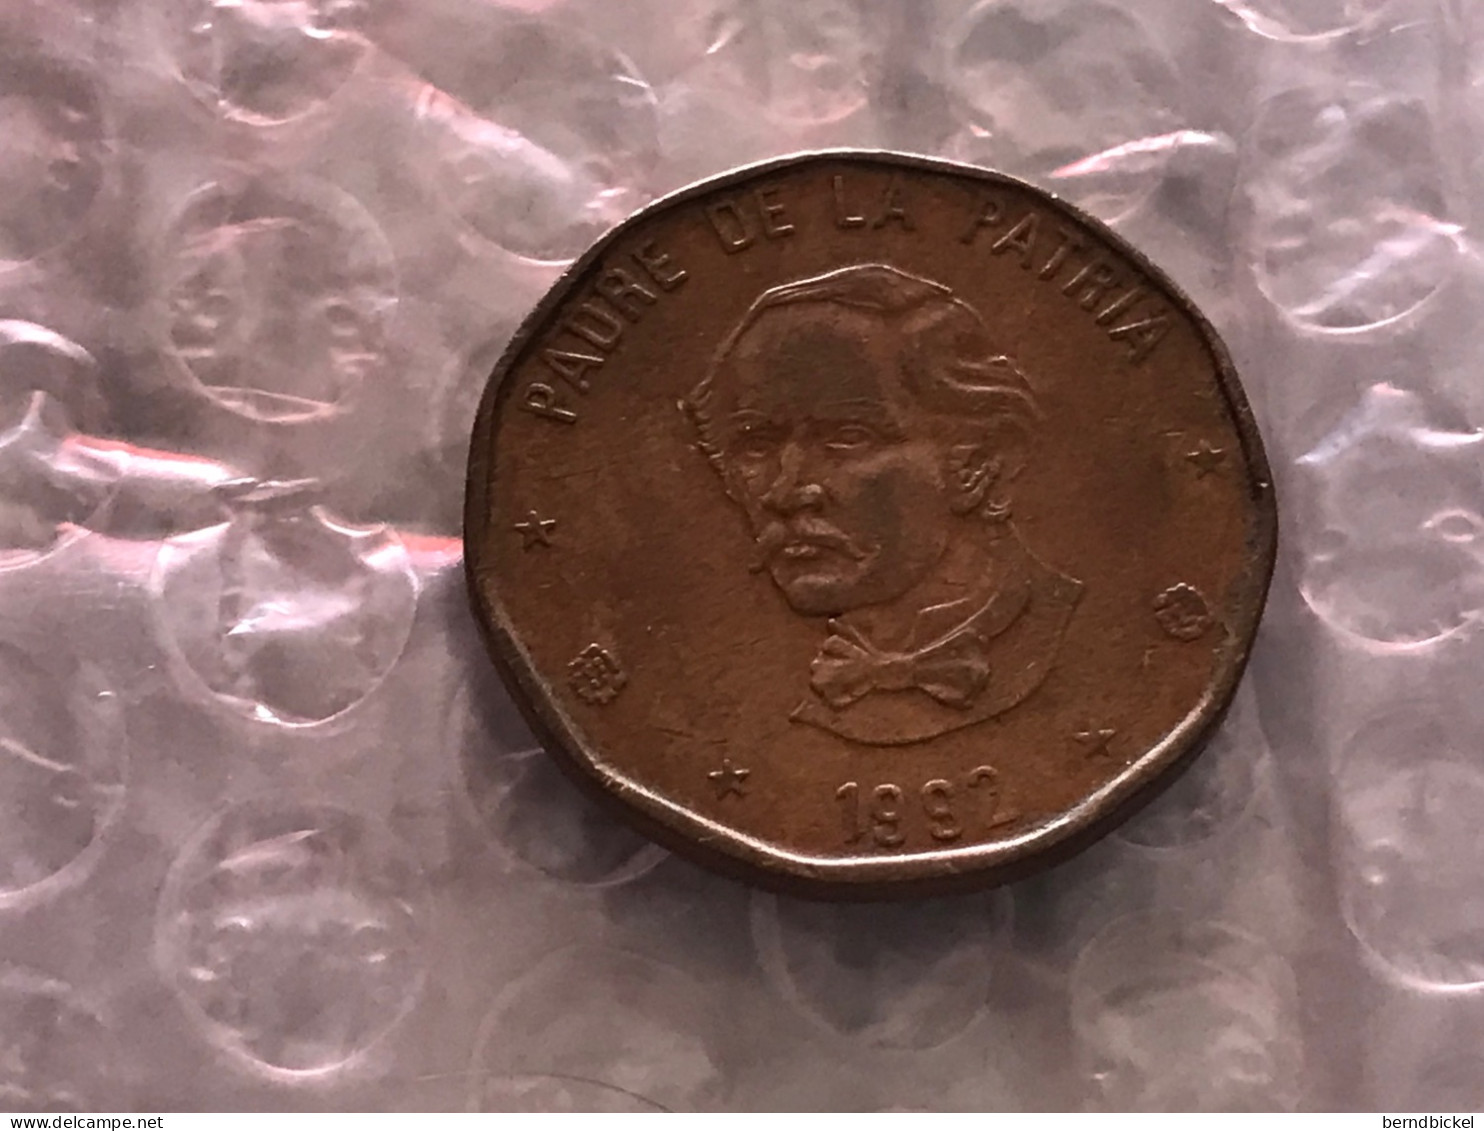 Münze Münzen Umlaufmünze Dominikanische Republik 1 Peso 1992 - Dominicaanse Republiek